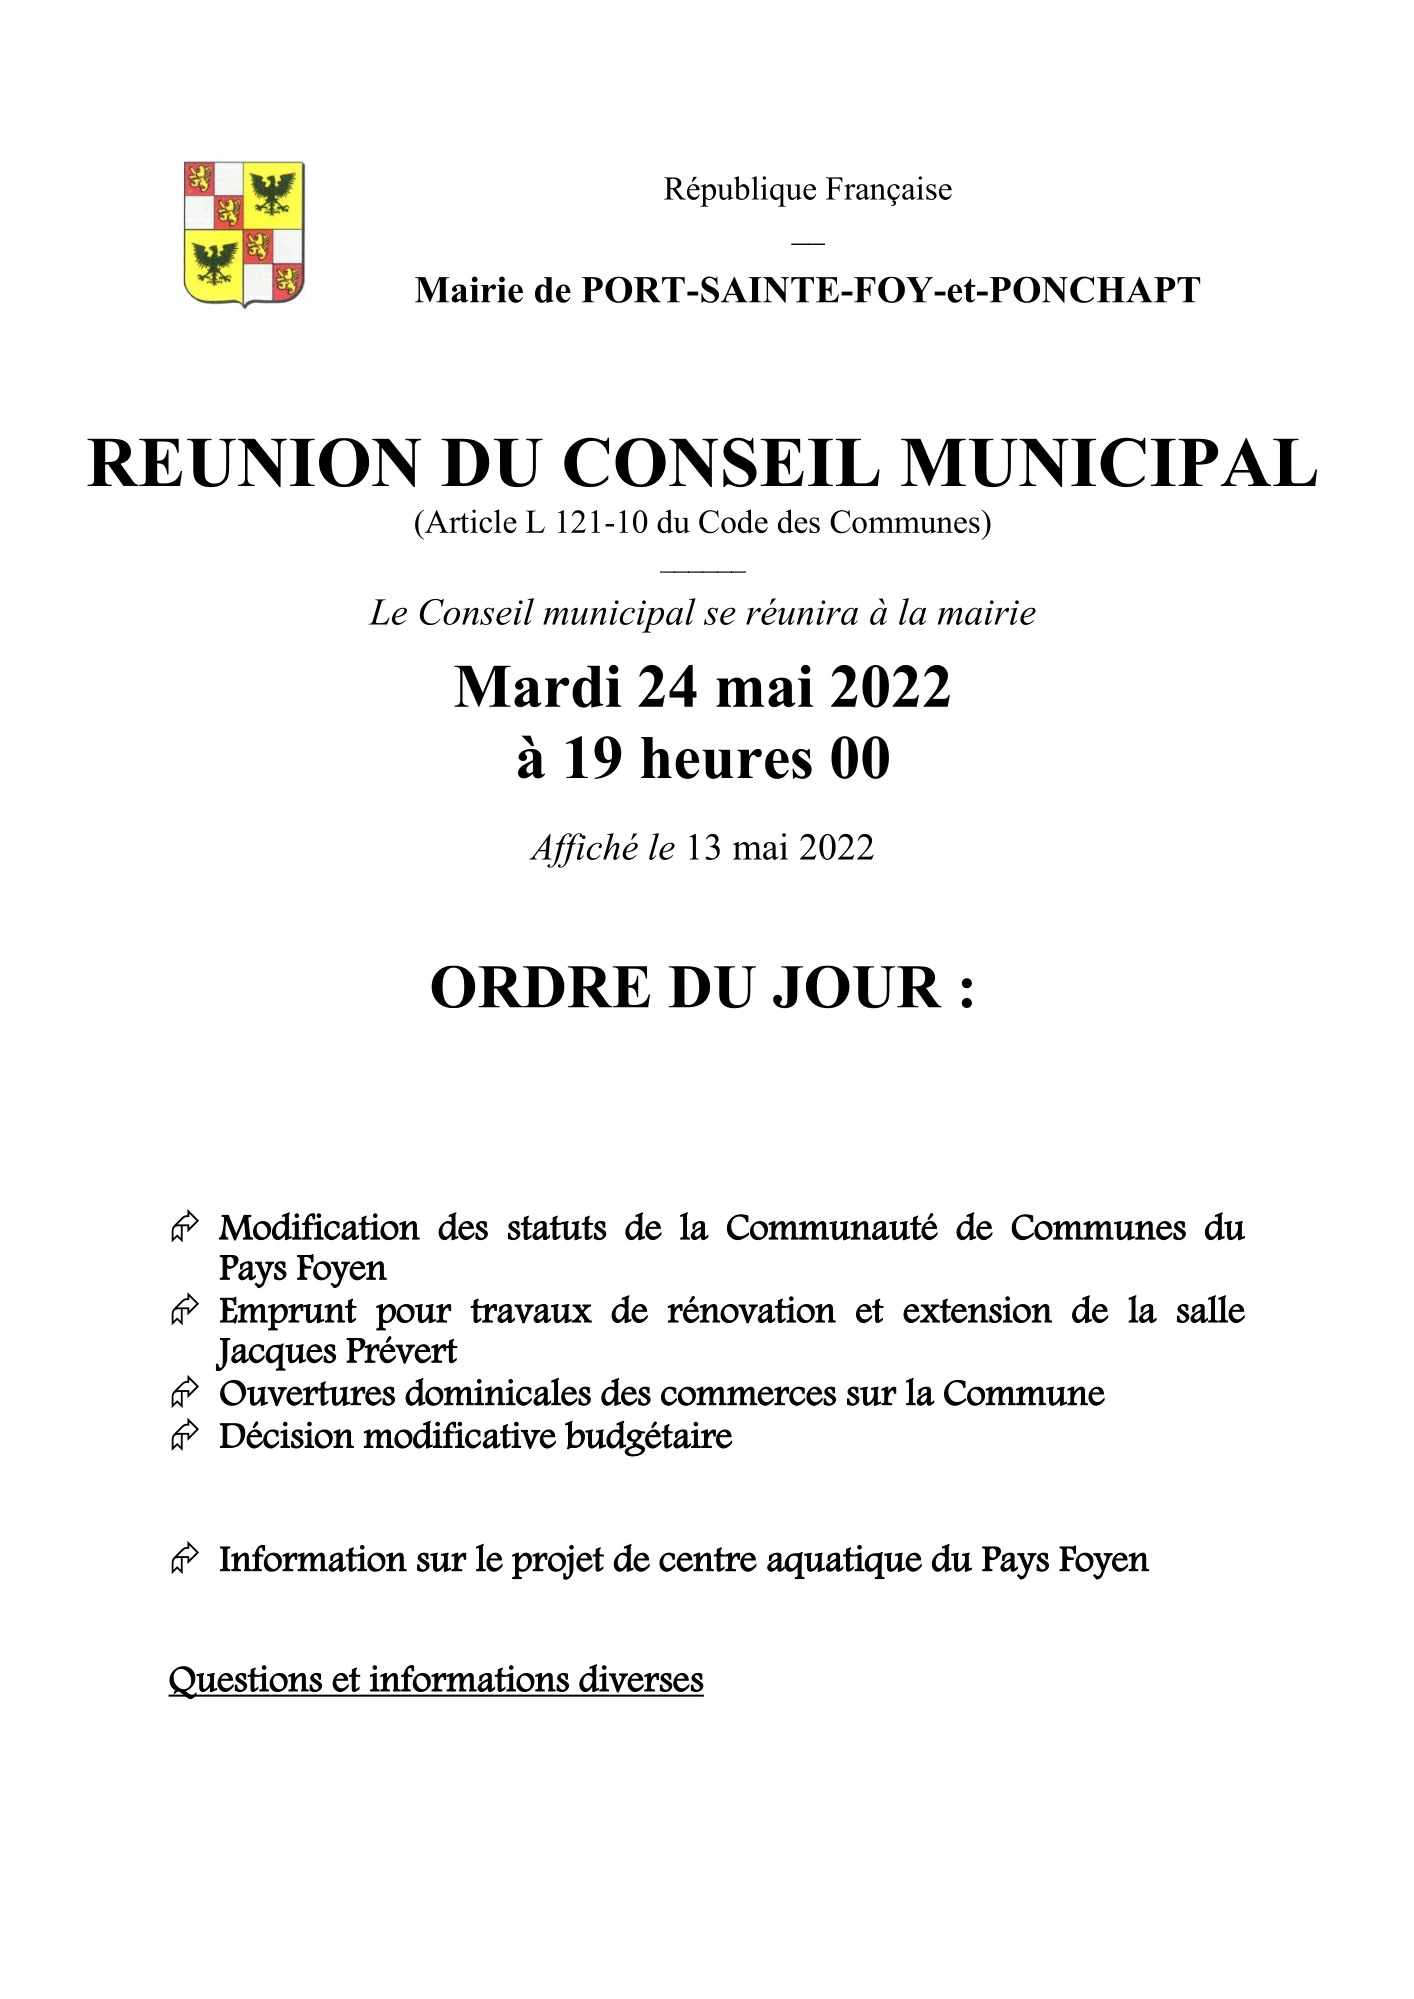 Ordre du jour du Conseil Municipal du 24 mai 2022